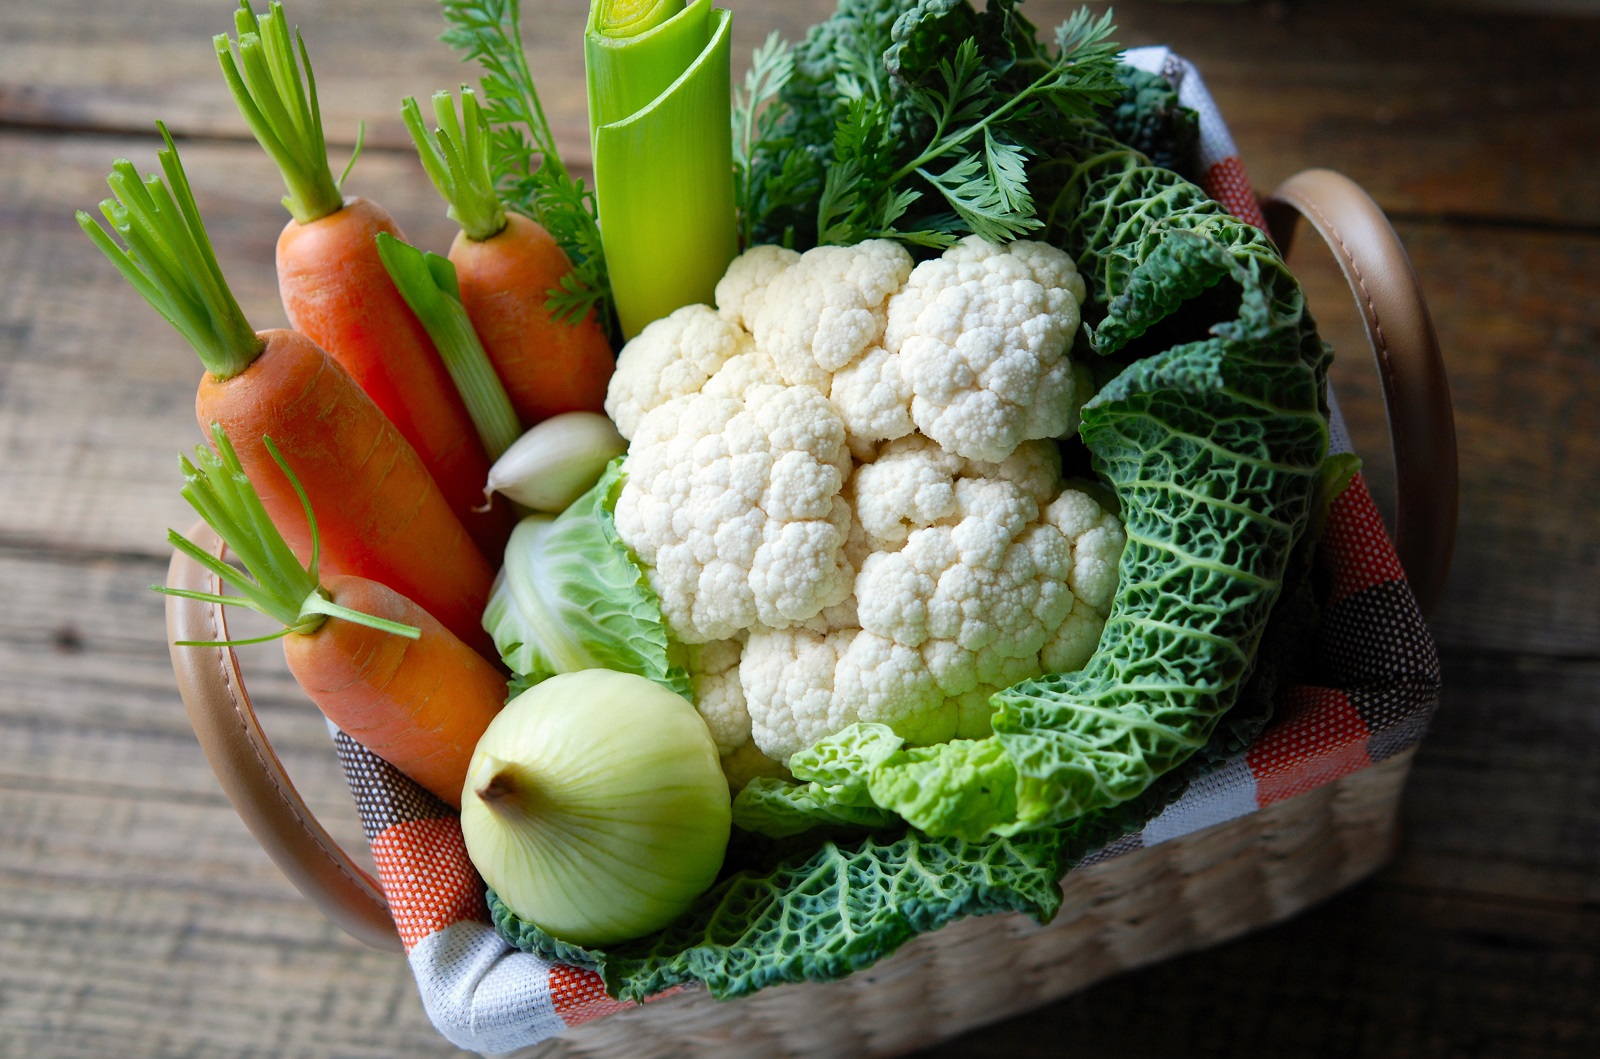 En hiver, faire le plein de légumes de saison.&nbsp;© alex, Adobe Stock